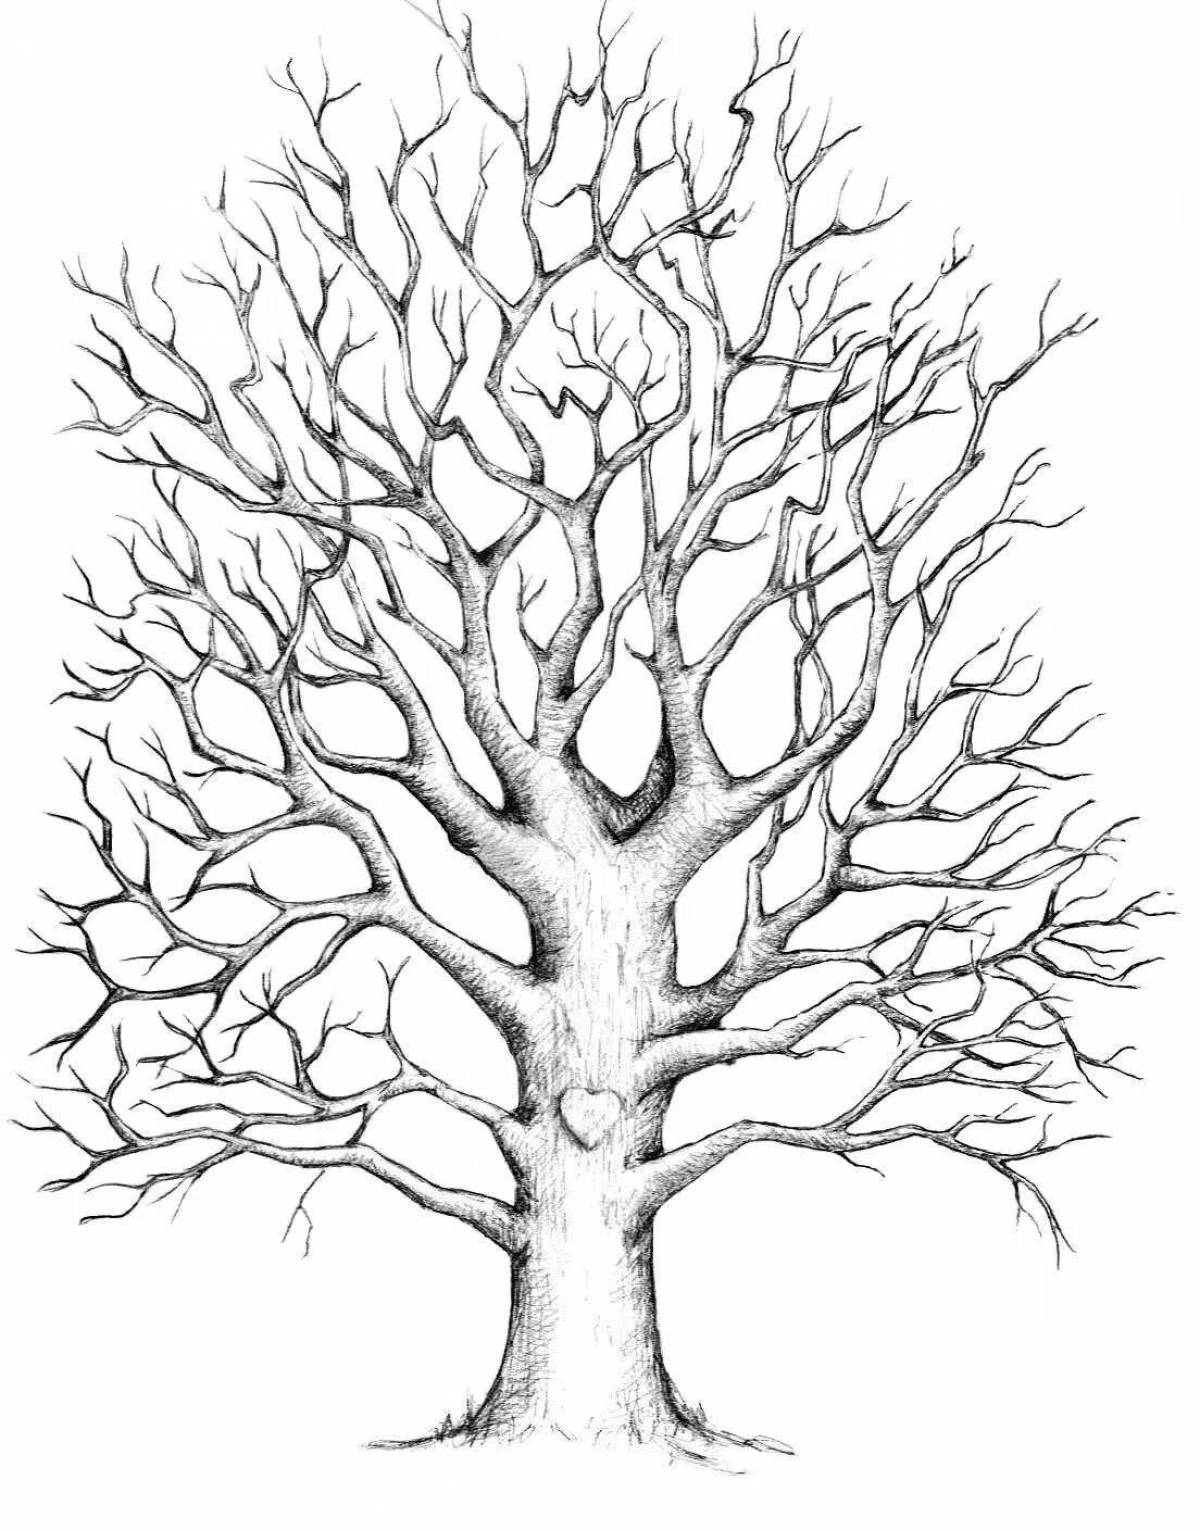 Joyful drawing of a sprawling tree